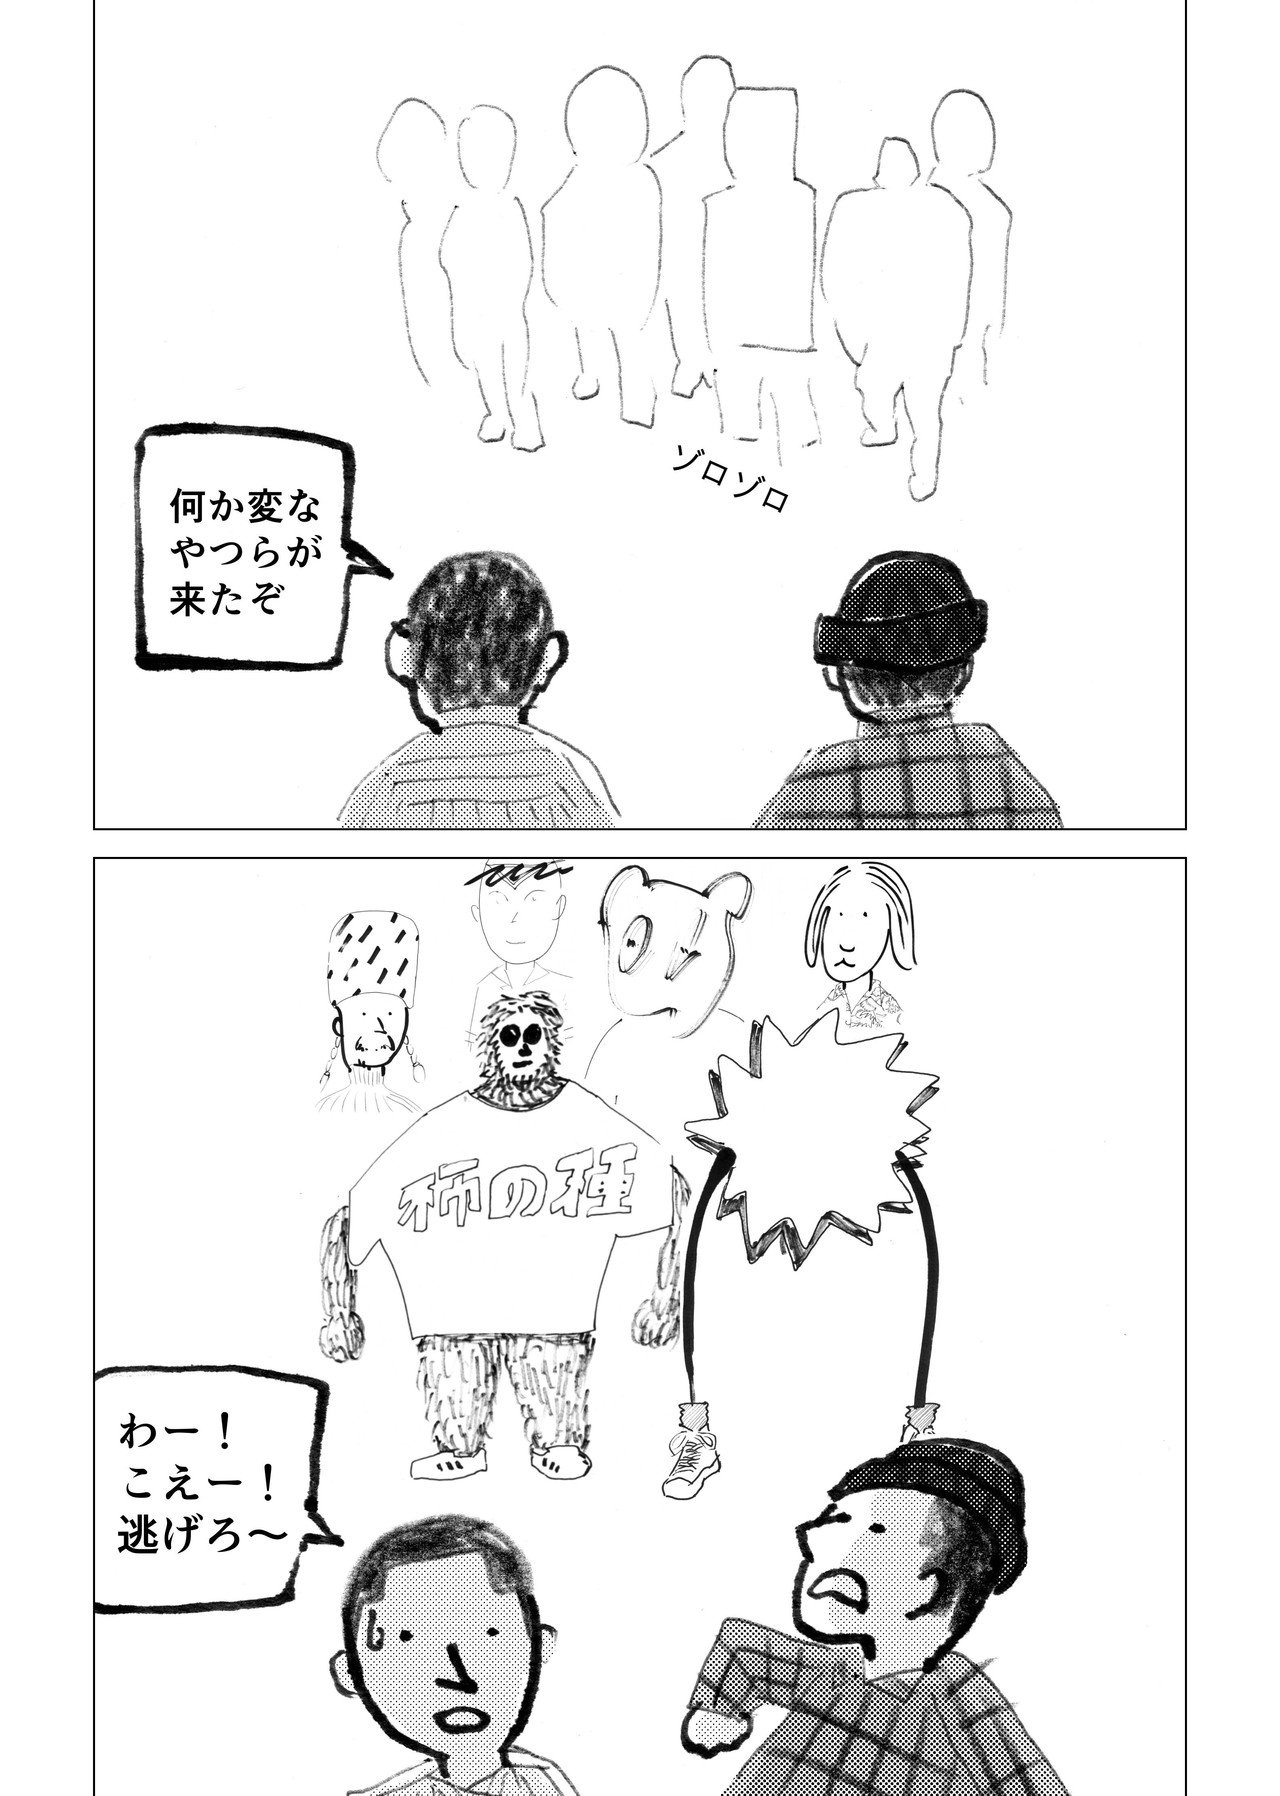 漫画_似顔絵_18